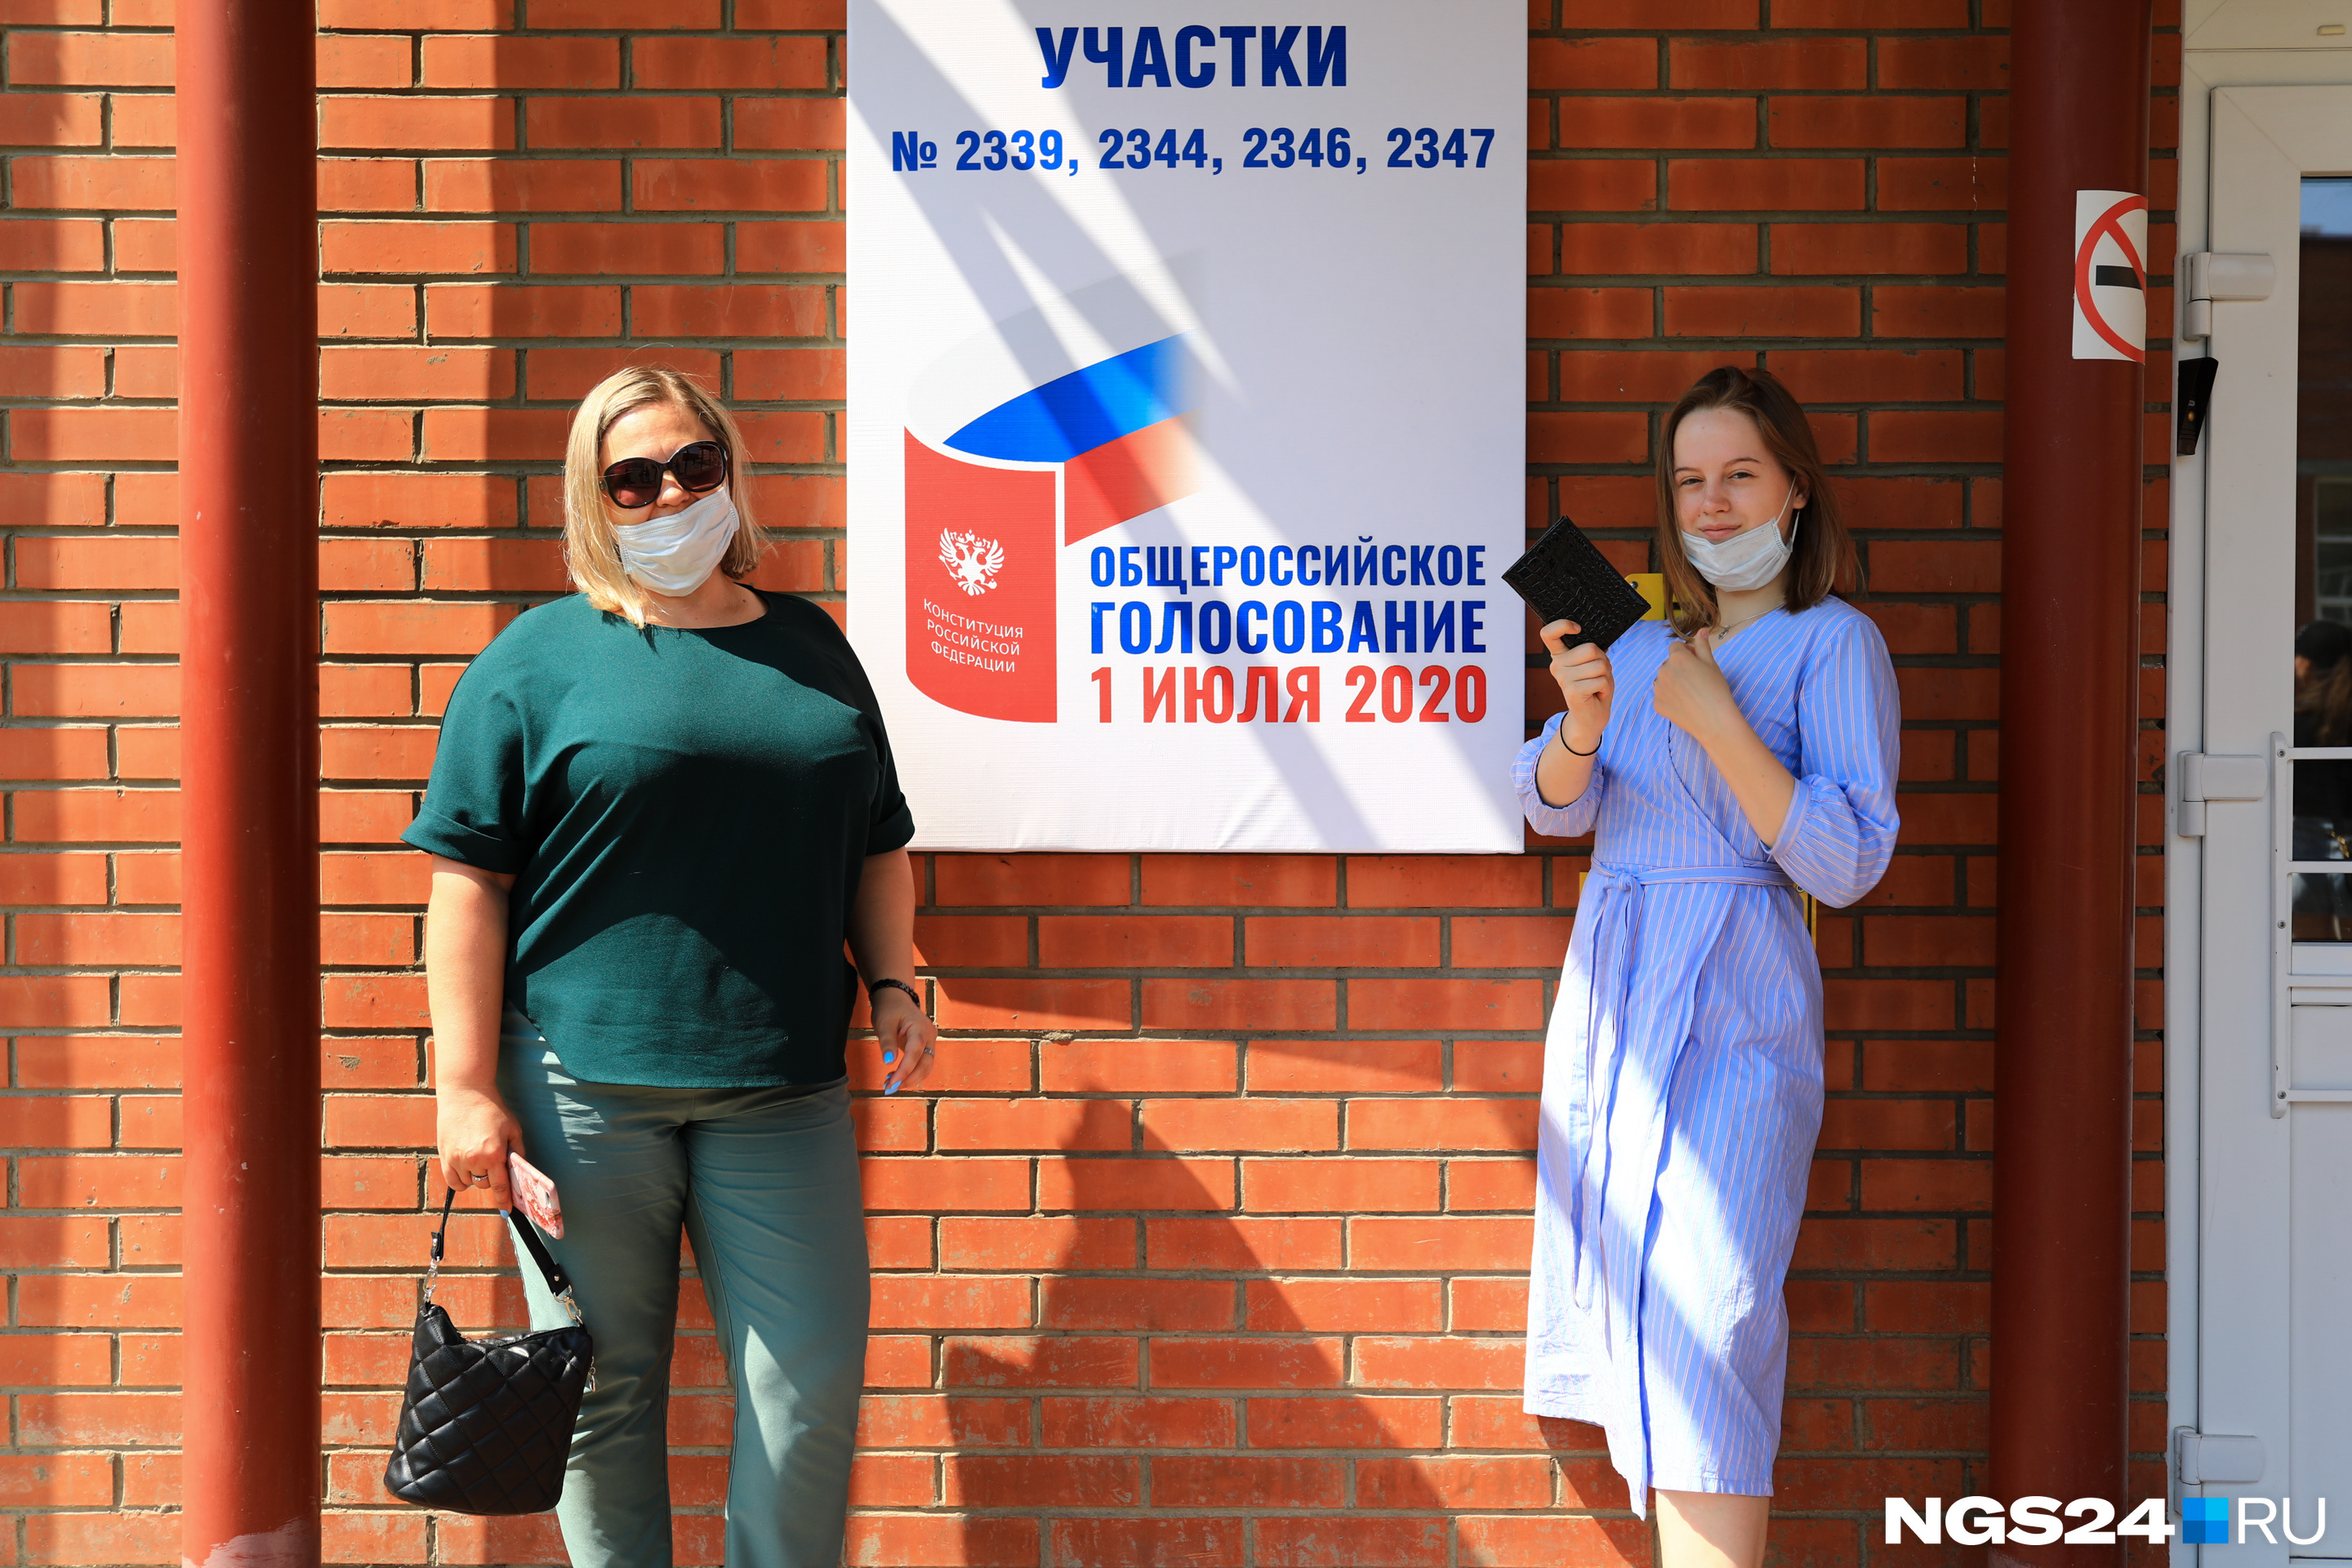 Как проголосовал красноярск. Фото с избирательного участка 232 Красноярск.